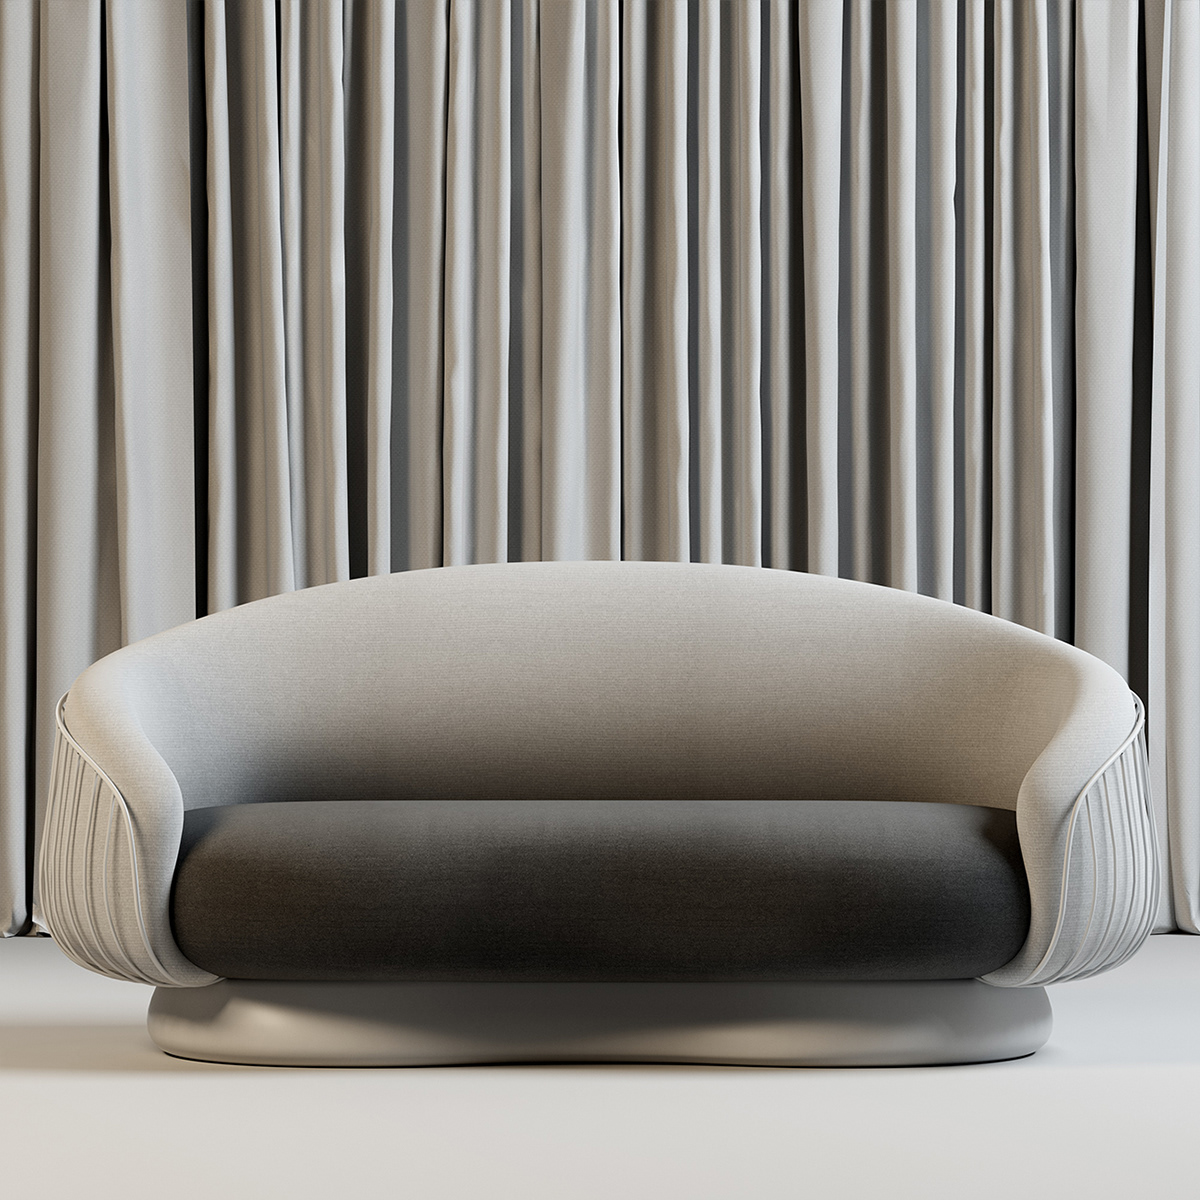 andrii kovalskyi elegant furniture furnitre  living room furniture product design  soft furniture